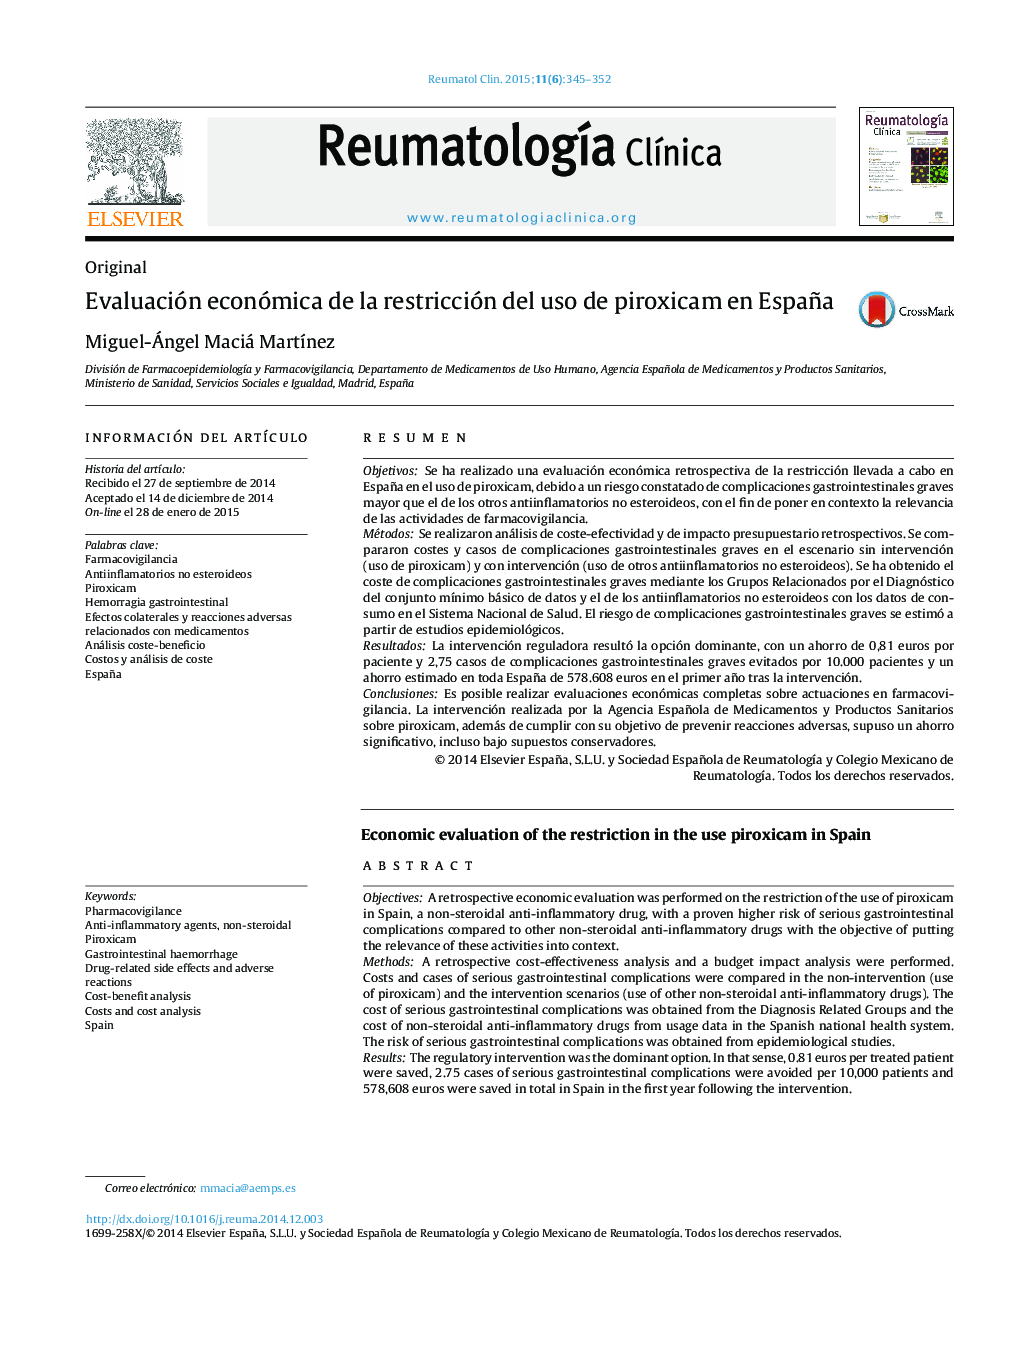 Evaluación económica de la restricción del uso de piroxicam en España